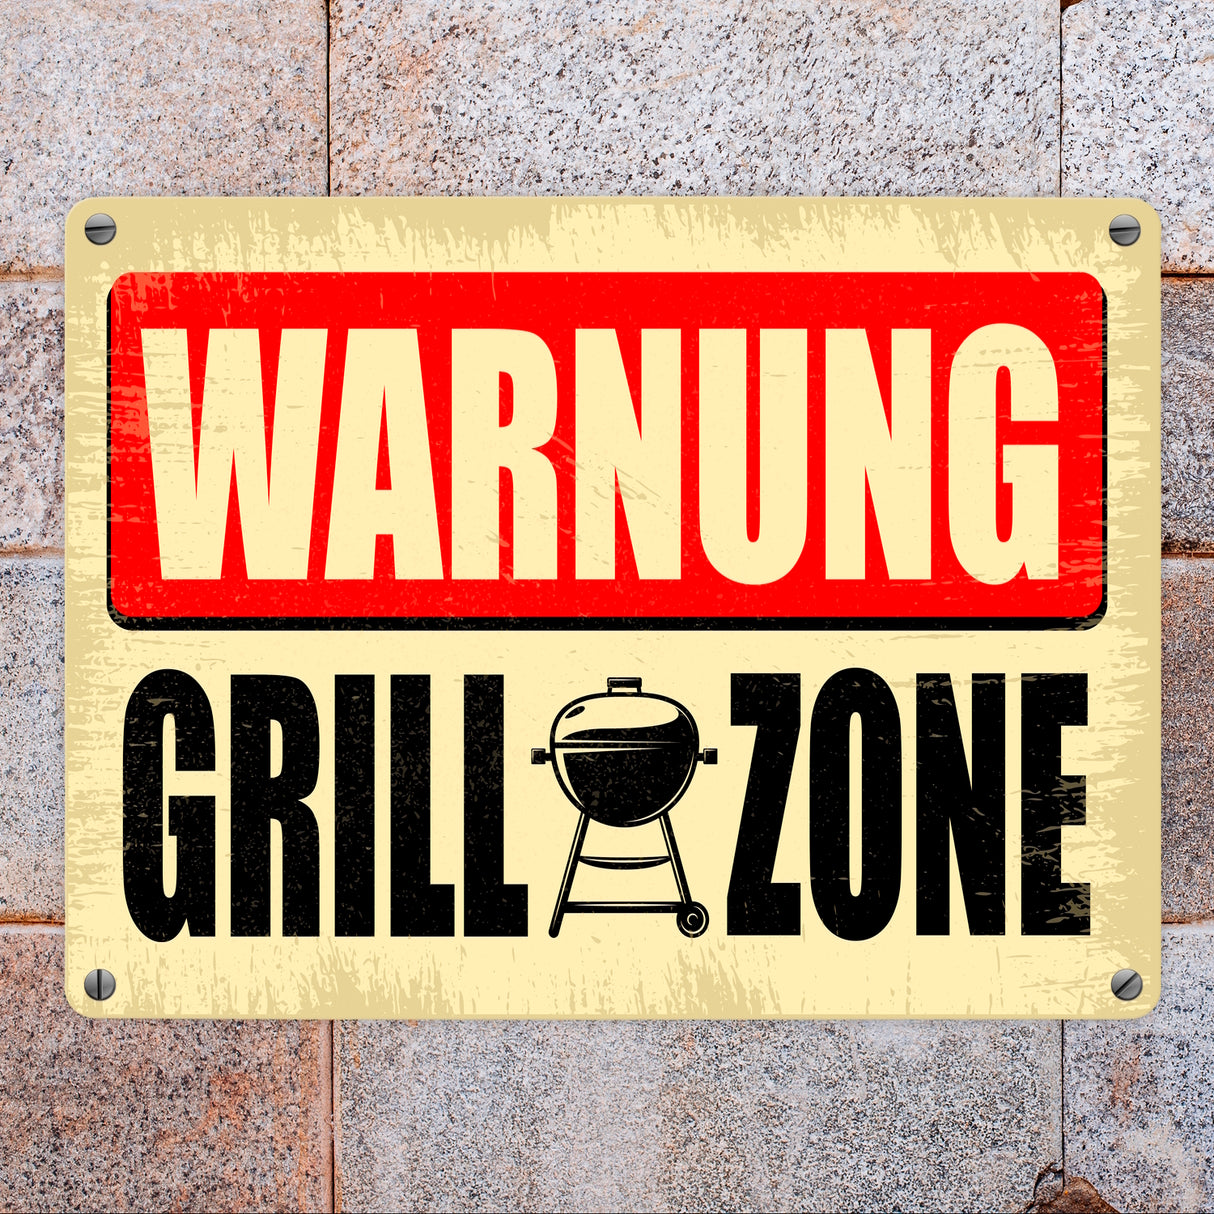 Warnung Grillzone Metallschild als lustiges Warnschild